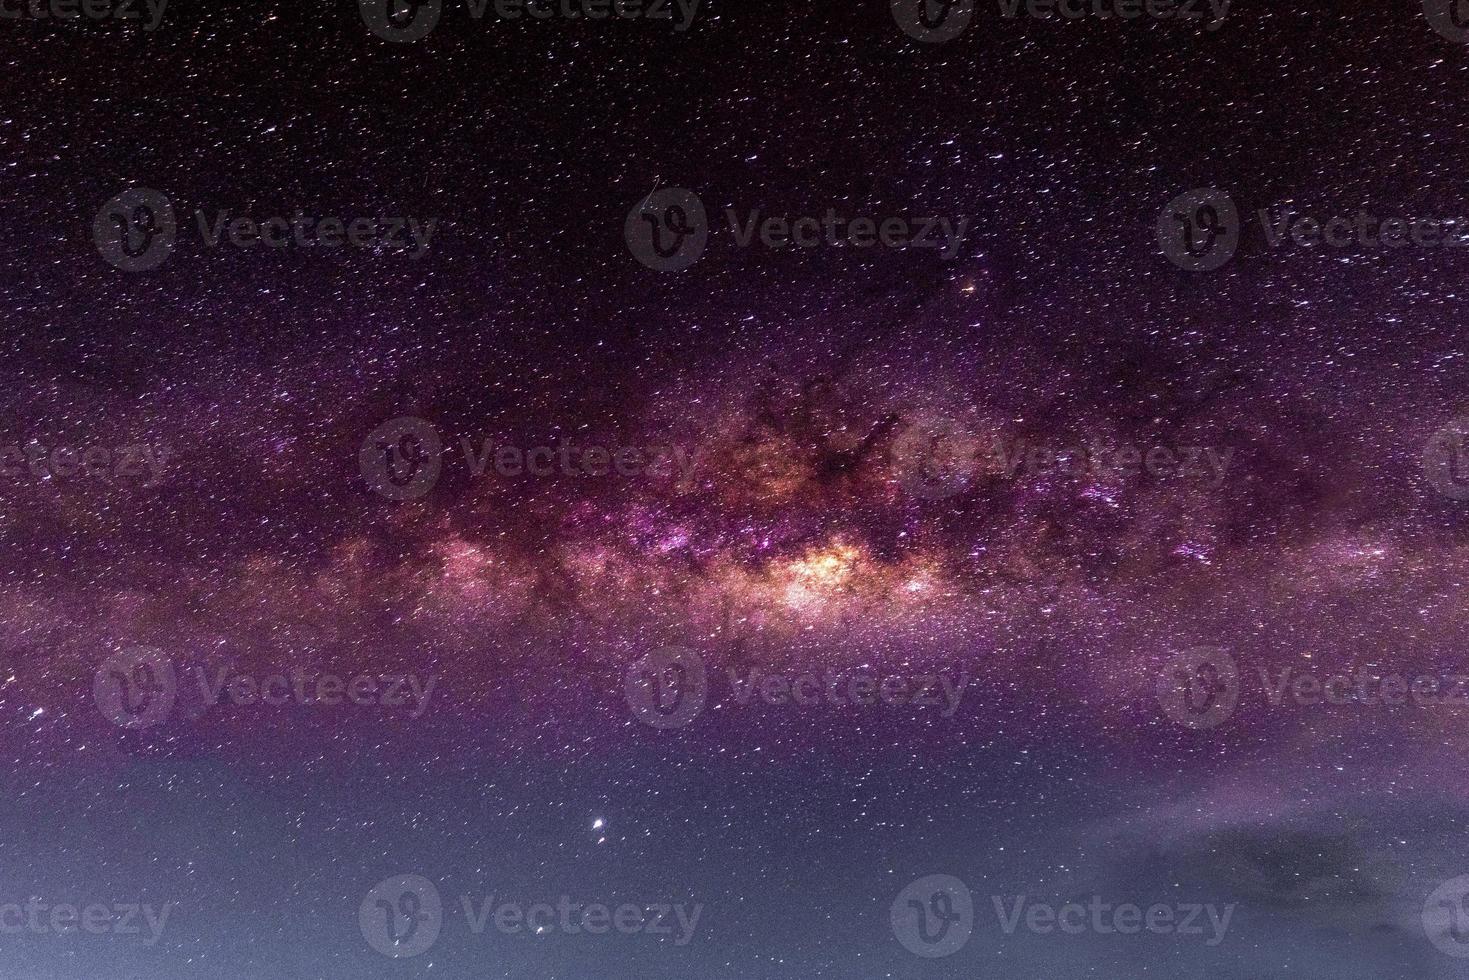 nattlandskap med färgglada och ljusgula mjölkvägar fulla av stjärnor på himlen i sommar vackra universum bakgrund av rymden foto